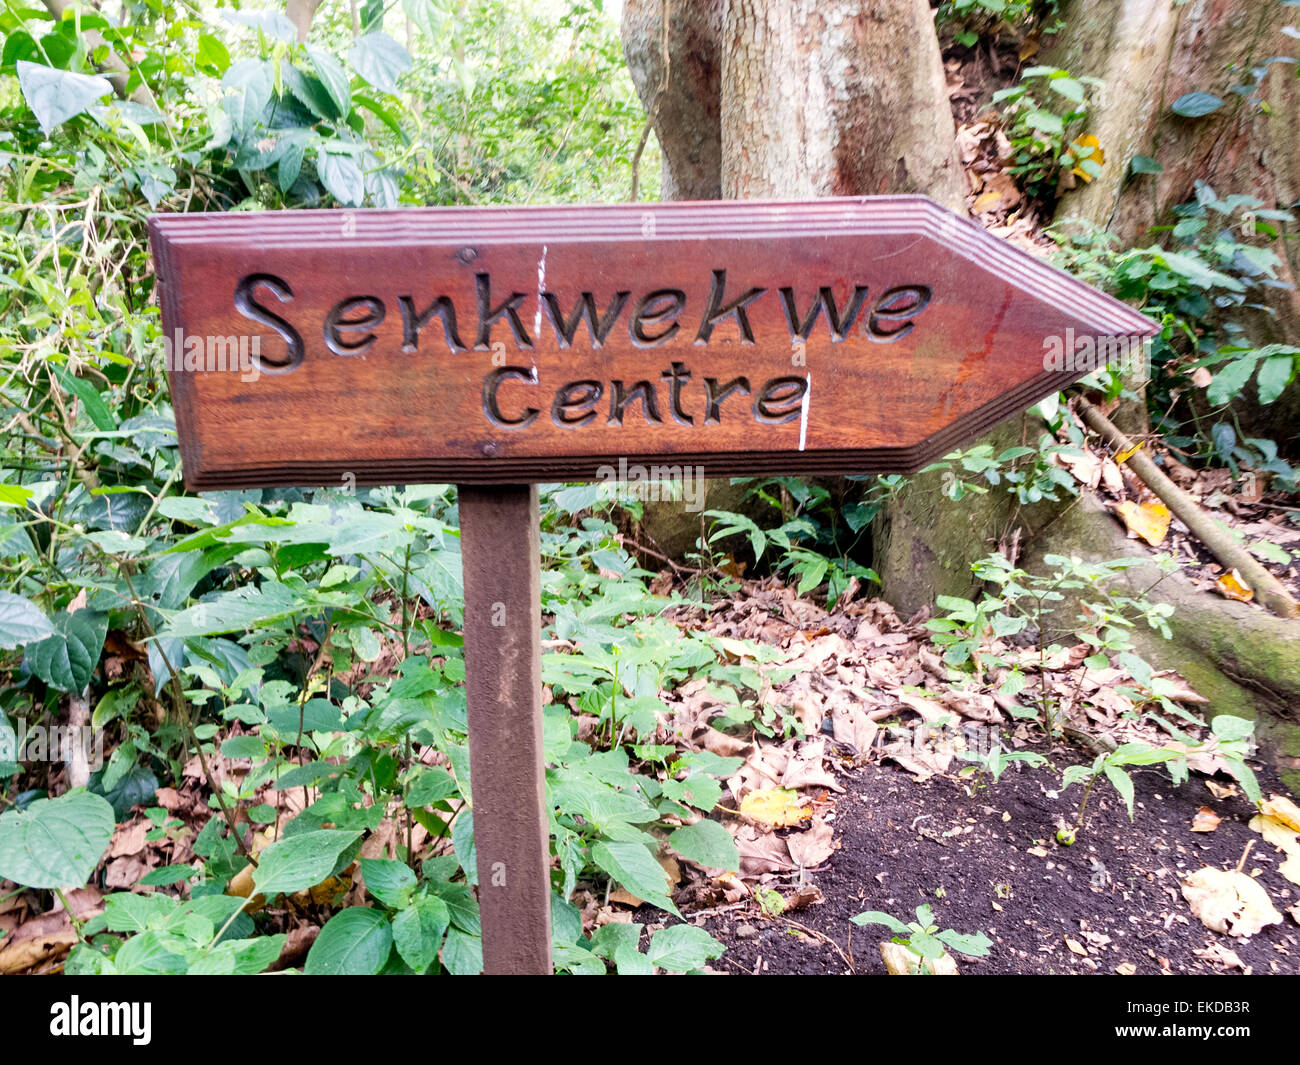 Ein Zeichen für die Senkwekwe Center Mountain Gorilla Waisenhaus, Virunga National Park in der Demokratischen Republik Kongo (DRC), Afrika Stockfoto